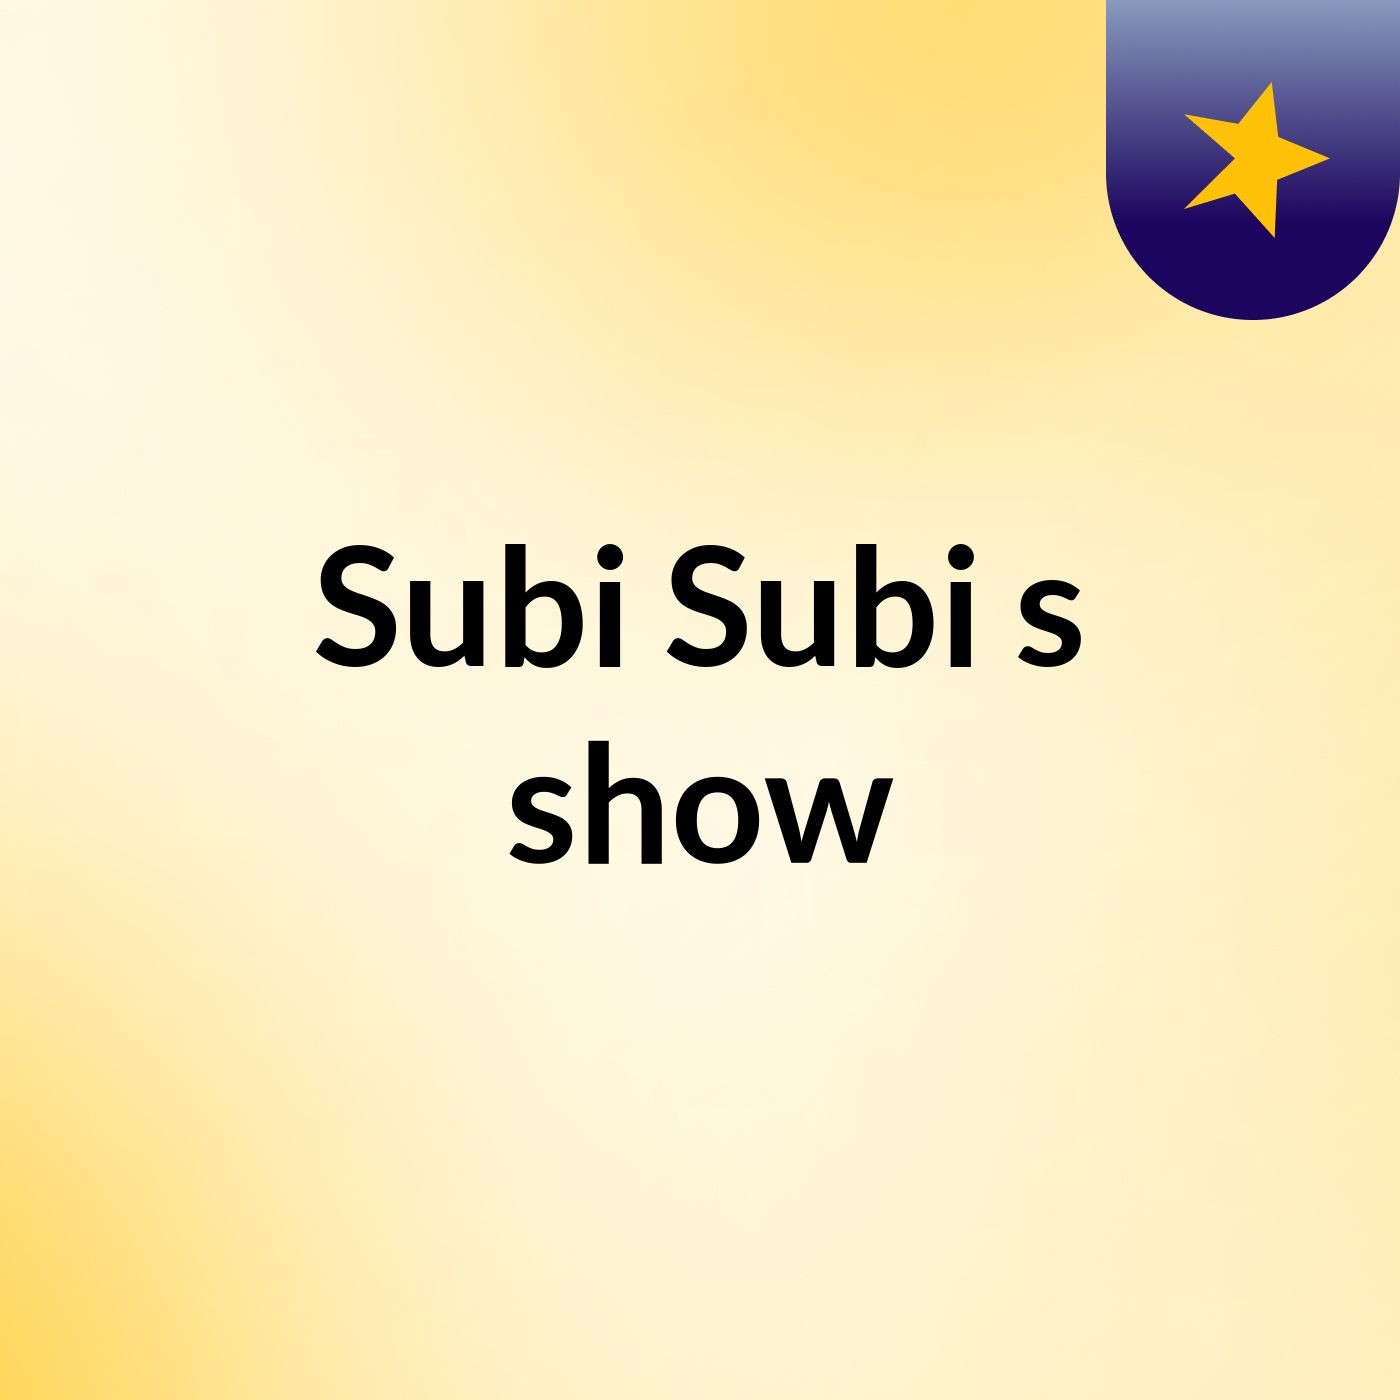 Subi Subi's show